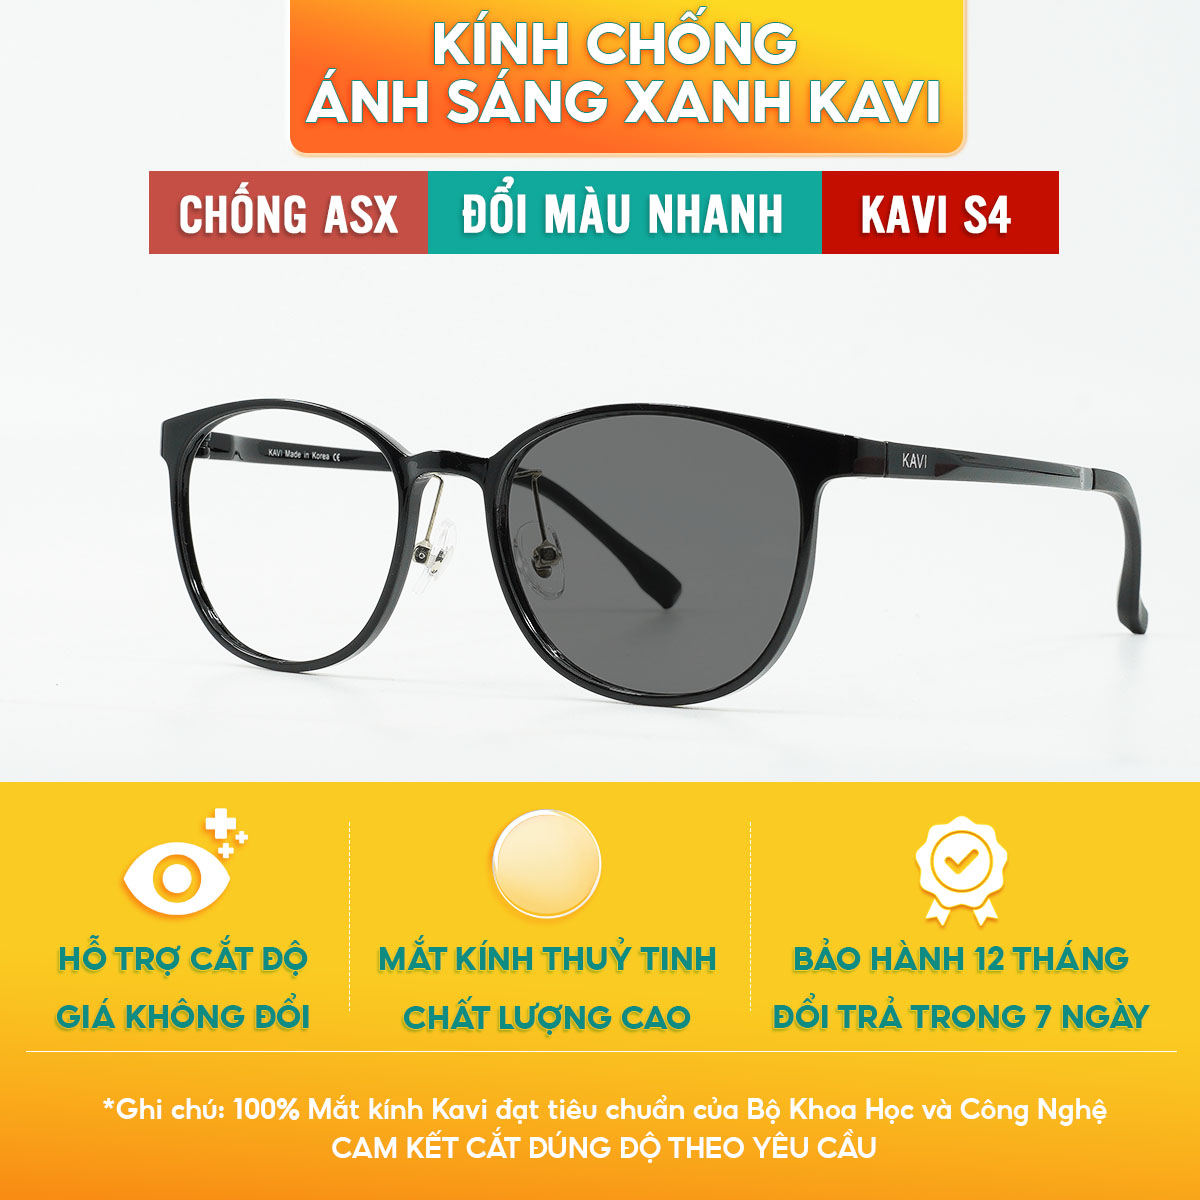 Kavi S4 – Kính đổi màu chống ánh sáng xanh mắt tròn cho nữ